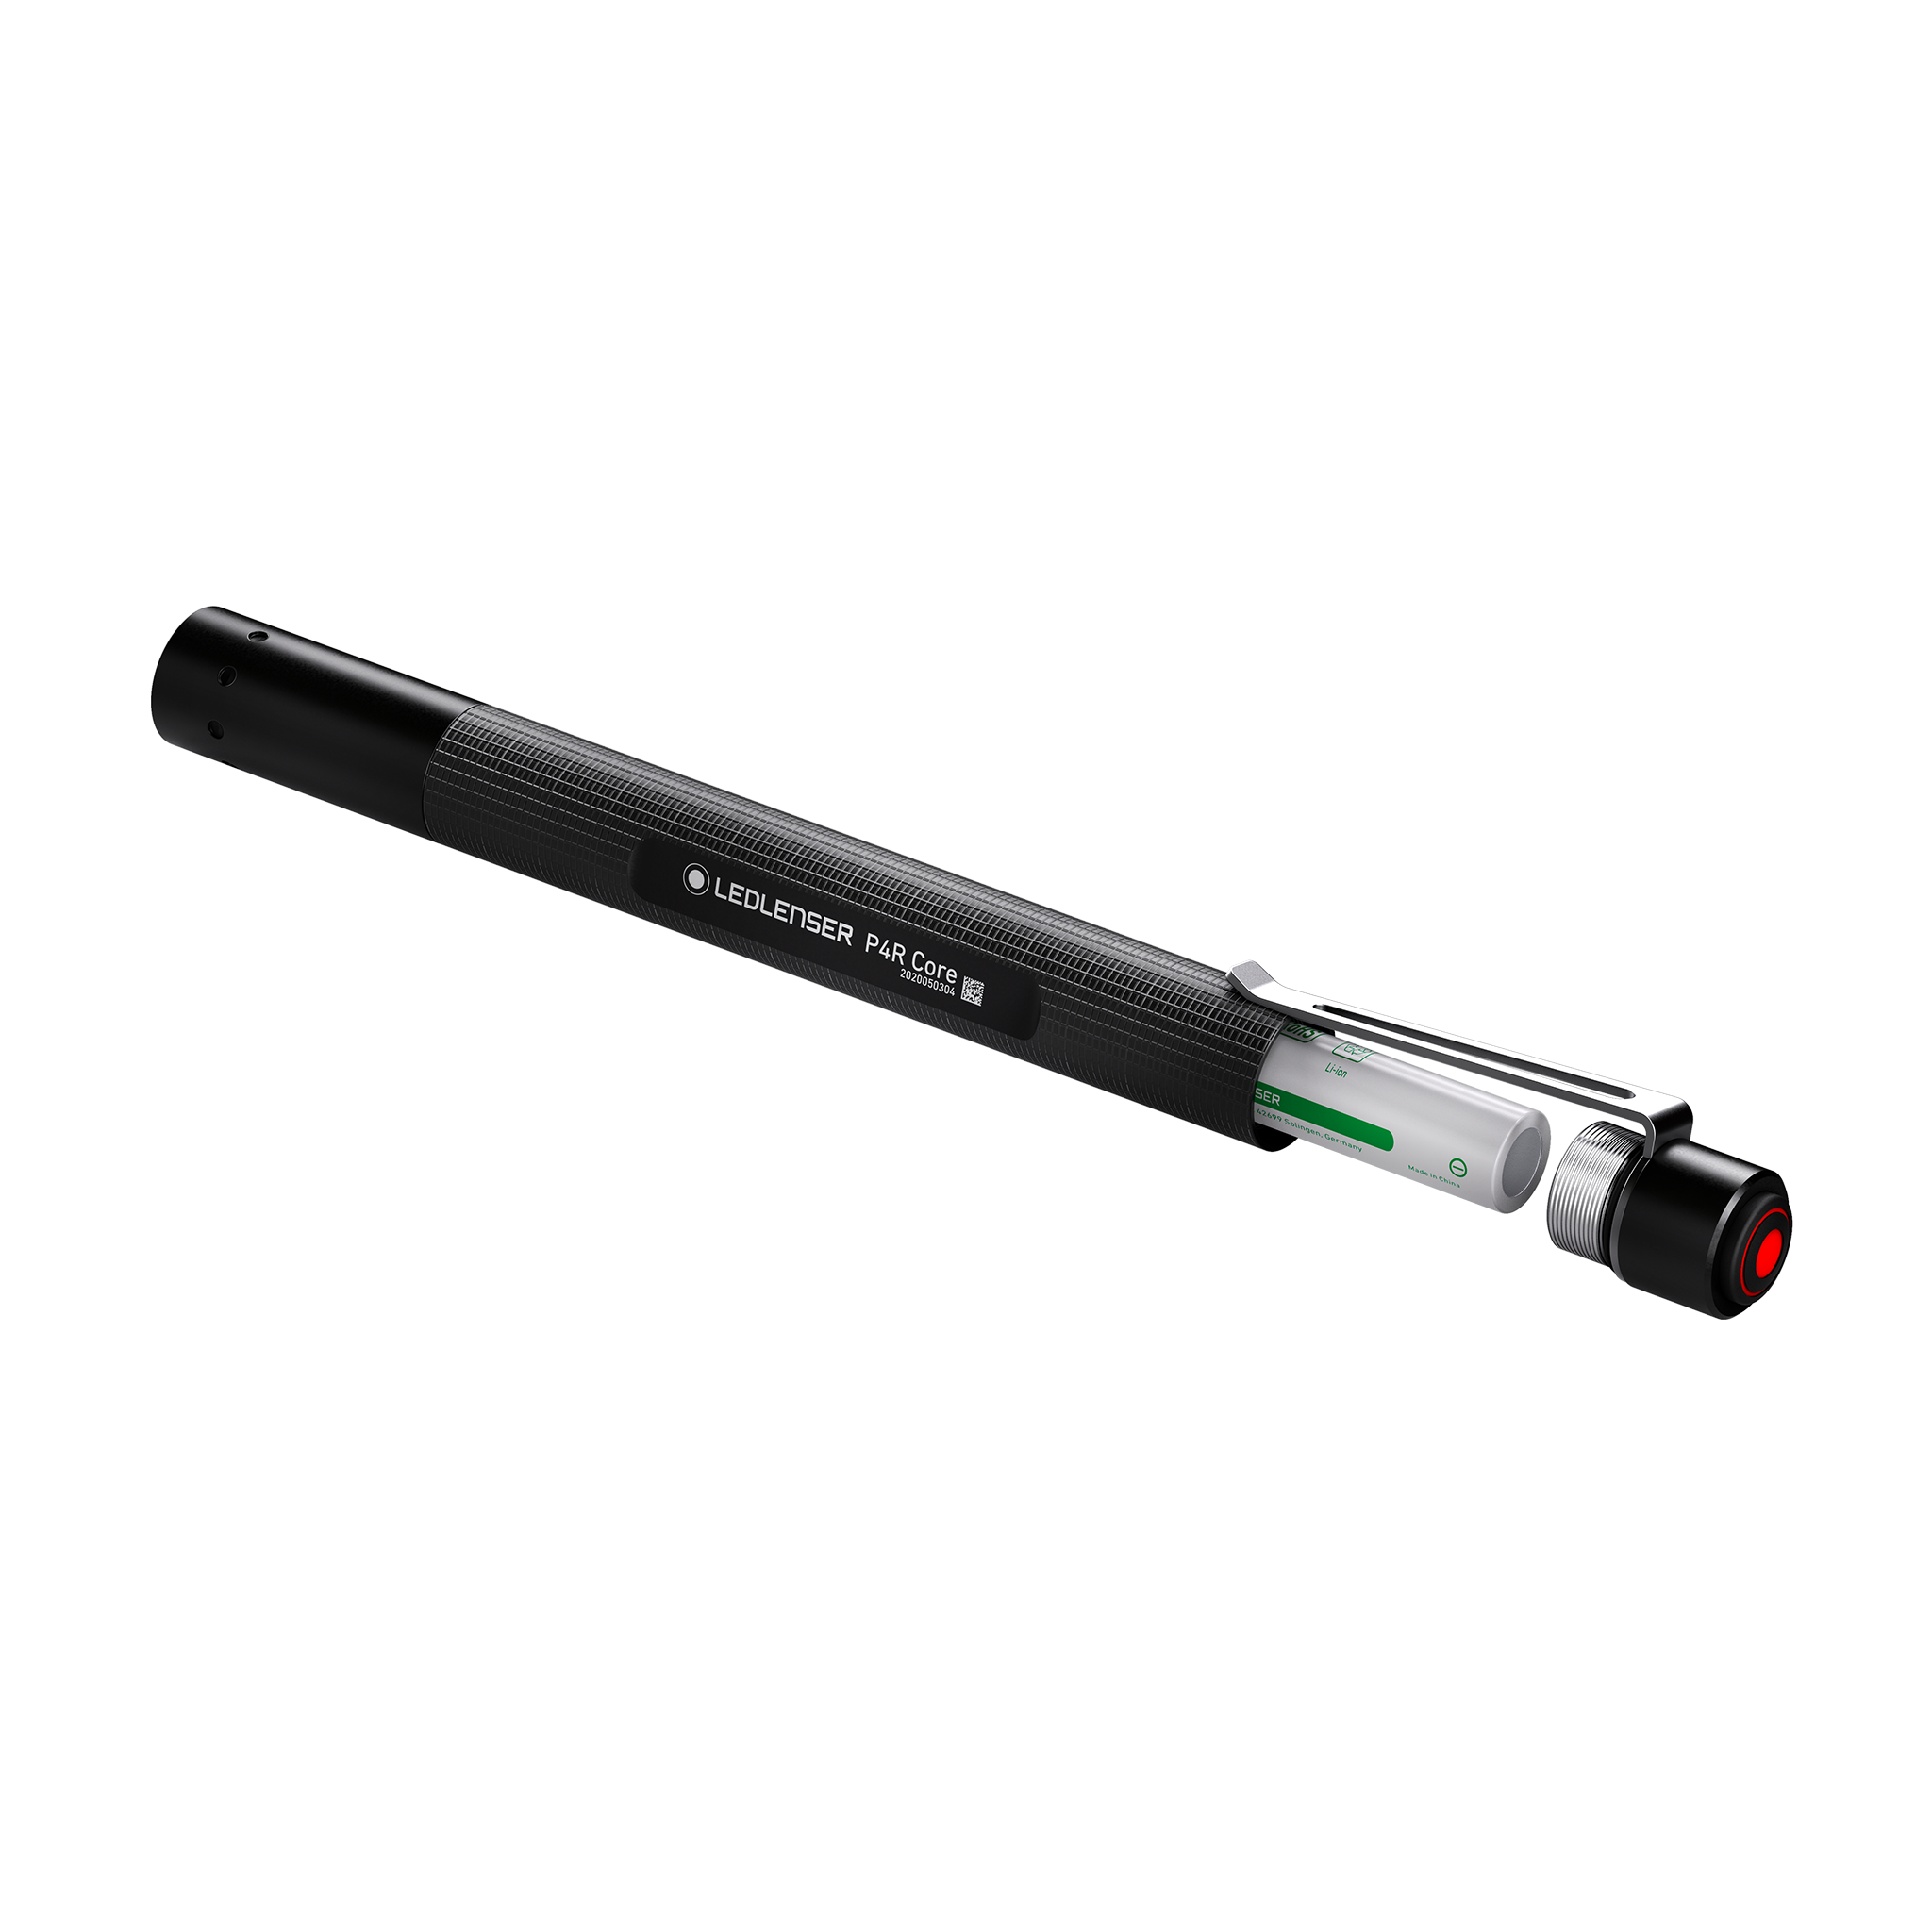 Se internettet næse Vej Ledlenser P4R Core Series Rechargeable Flashlight | Ledlenser USA